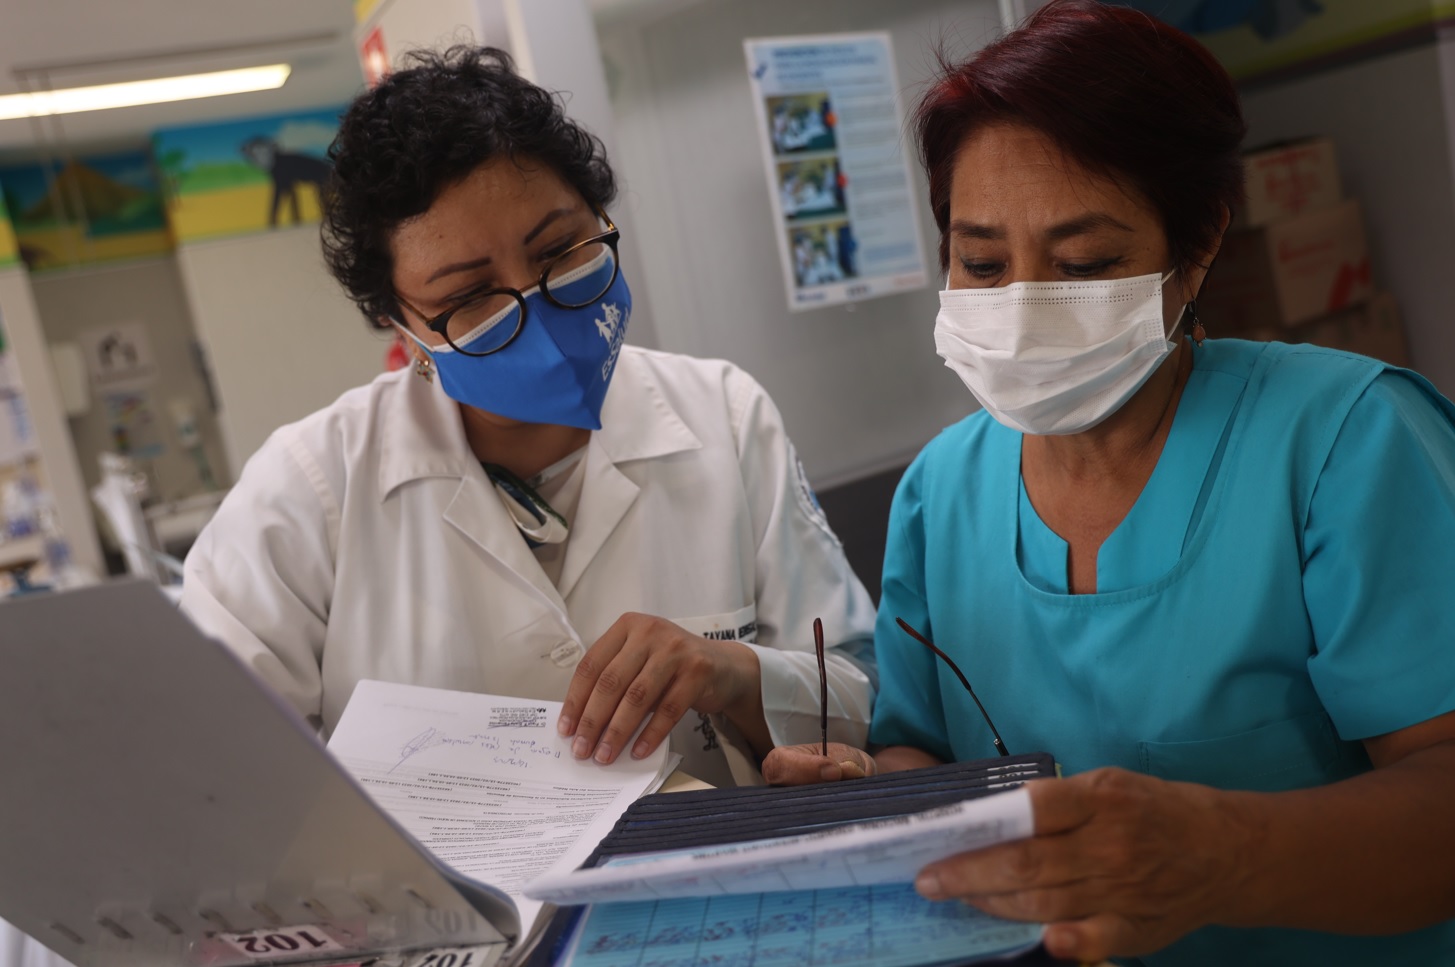 Essalud - Guerreras de EsSalud: Doctora y enfermera salvan vida de niños y prematuros en hospital Rebagliati